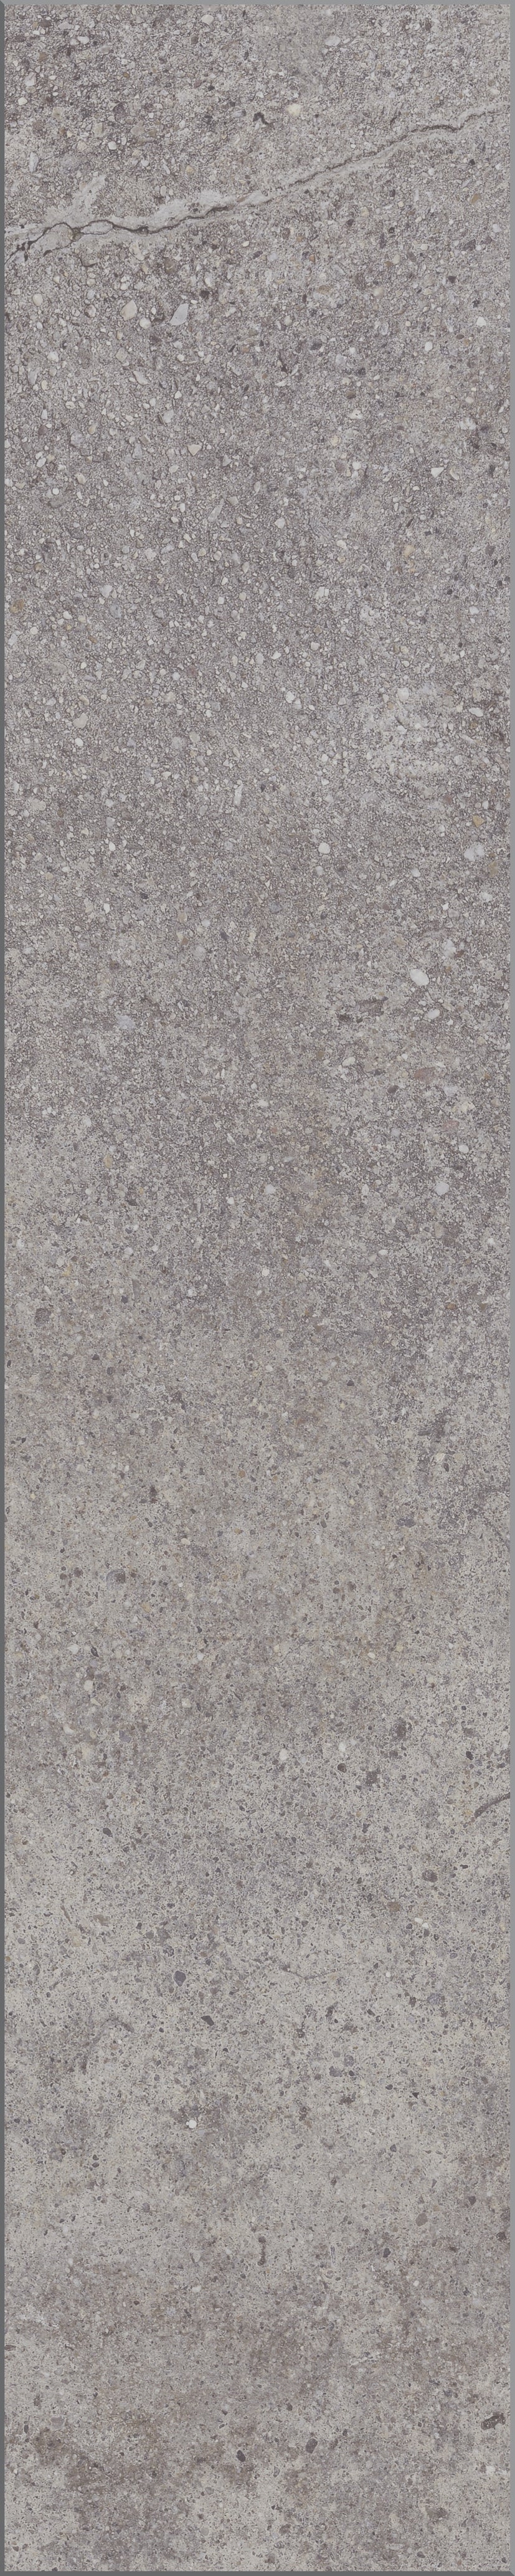 Parchet laminat Pesaro Cement Herringbone D4739 8/32, Kronotex